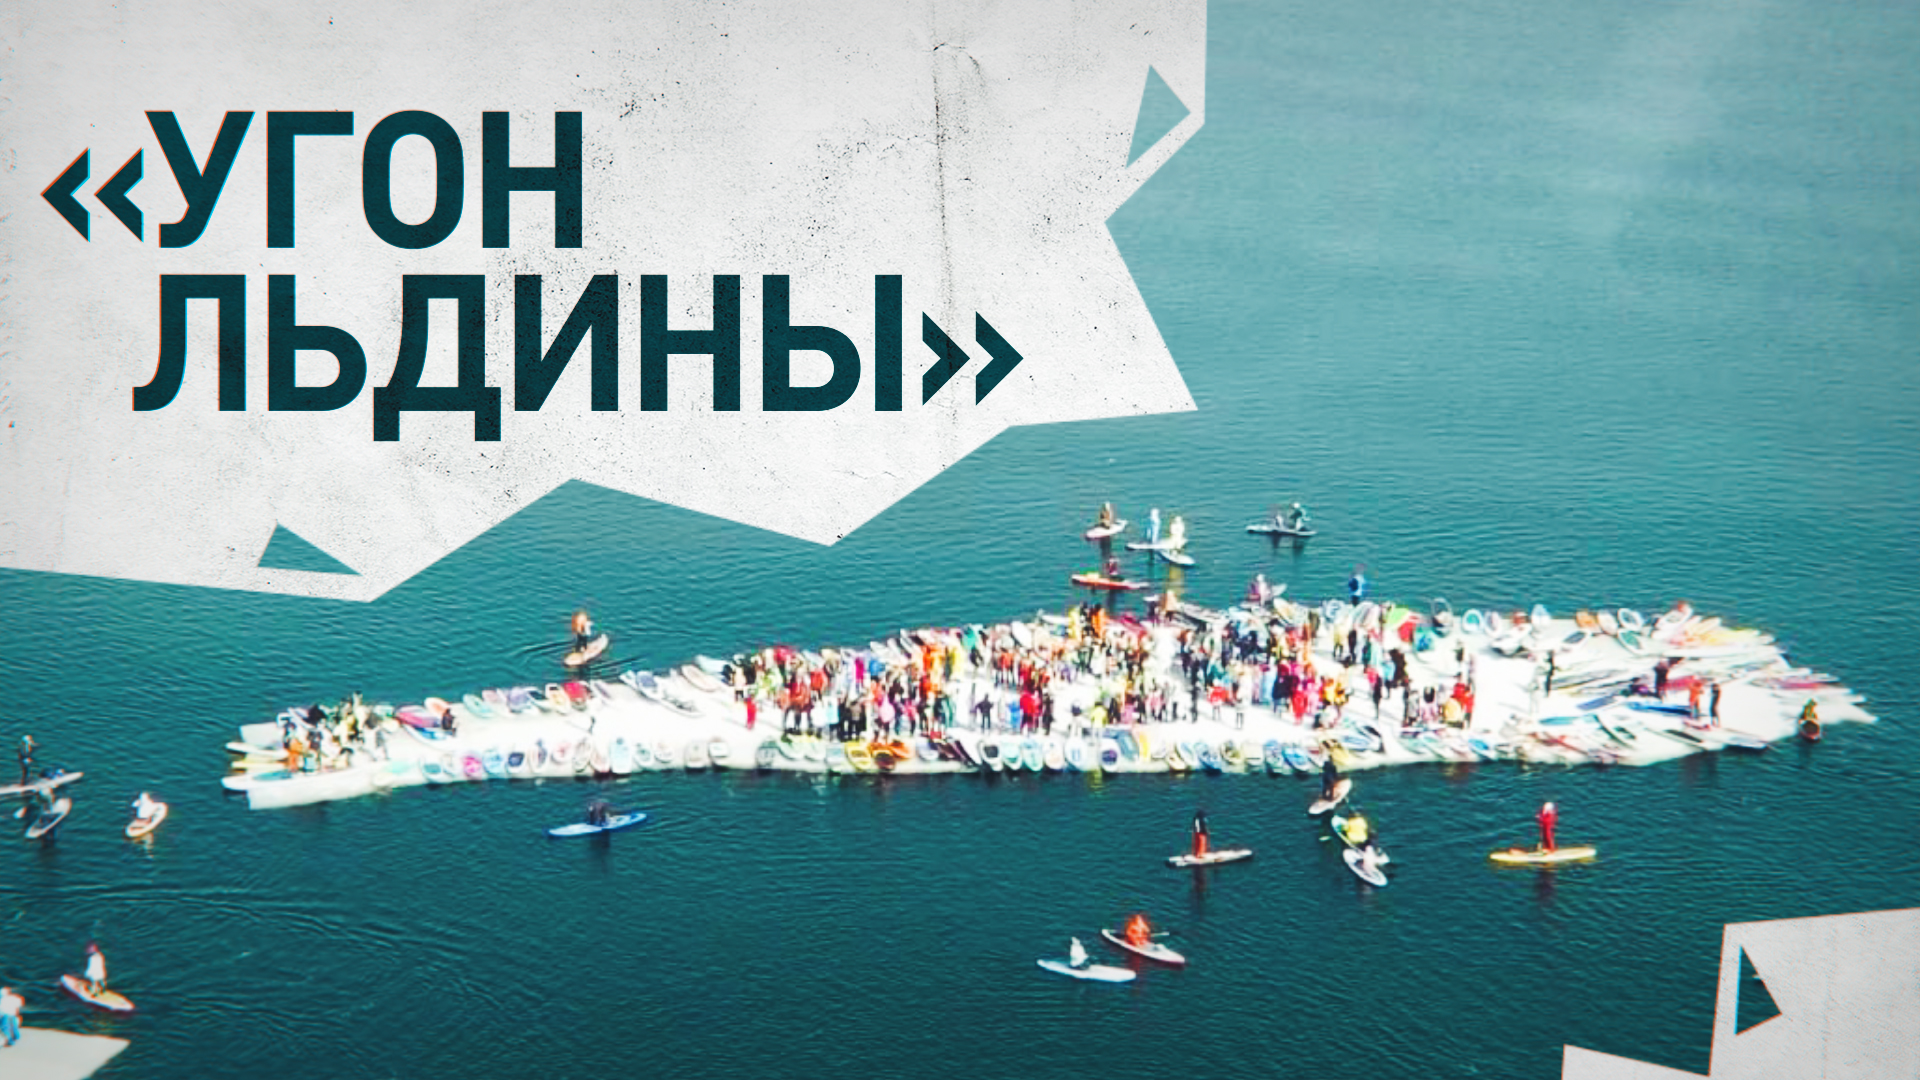 Во Владивостоке прошёл флешмоб SUP-сёрферов «Угон льдины» — видео